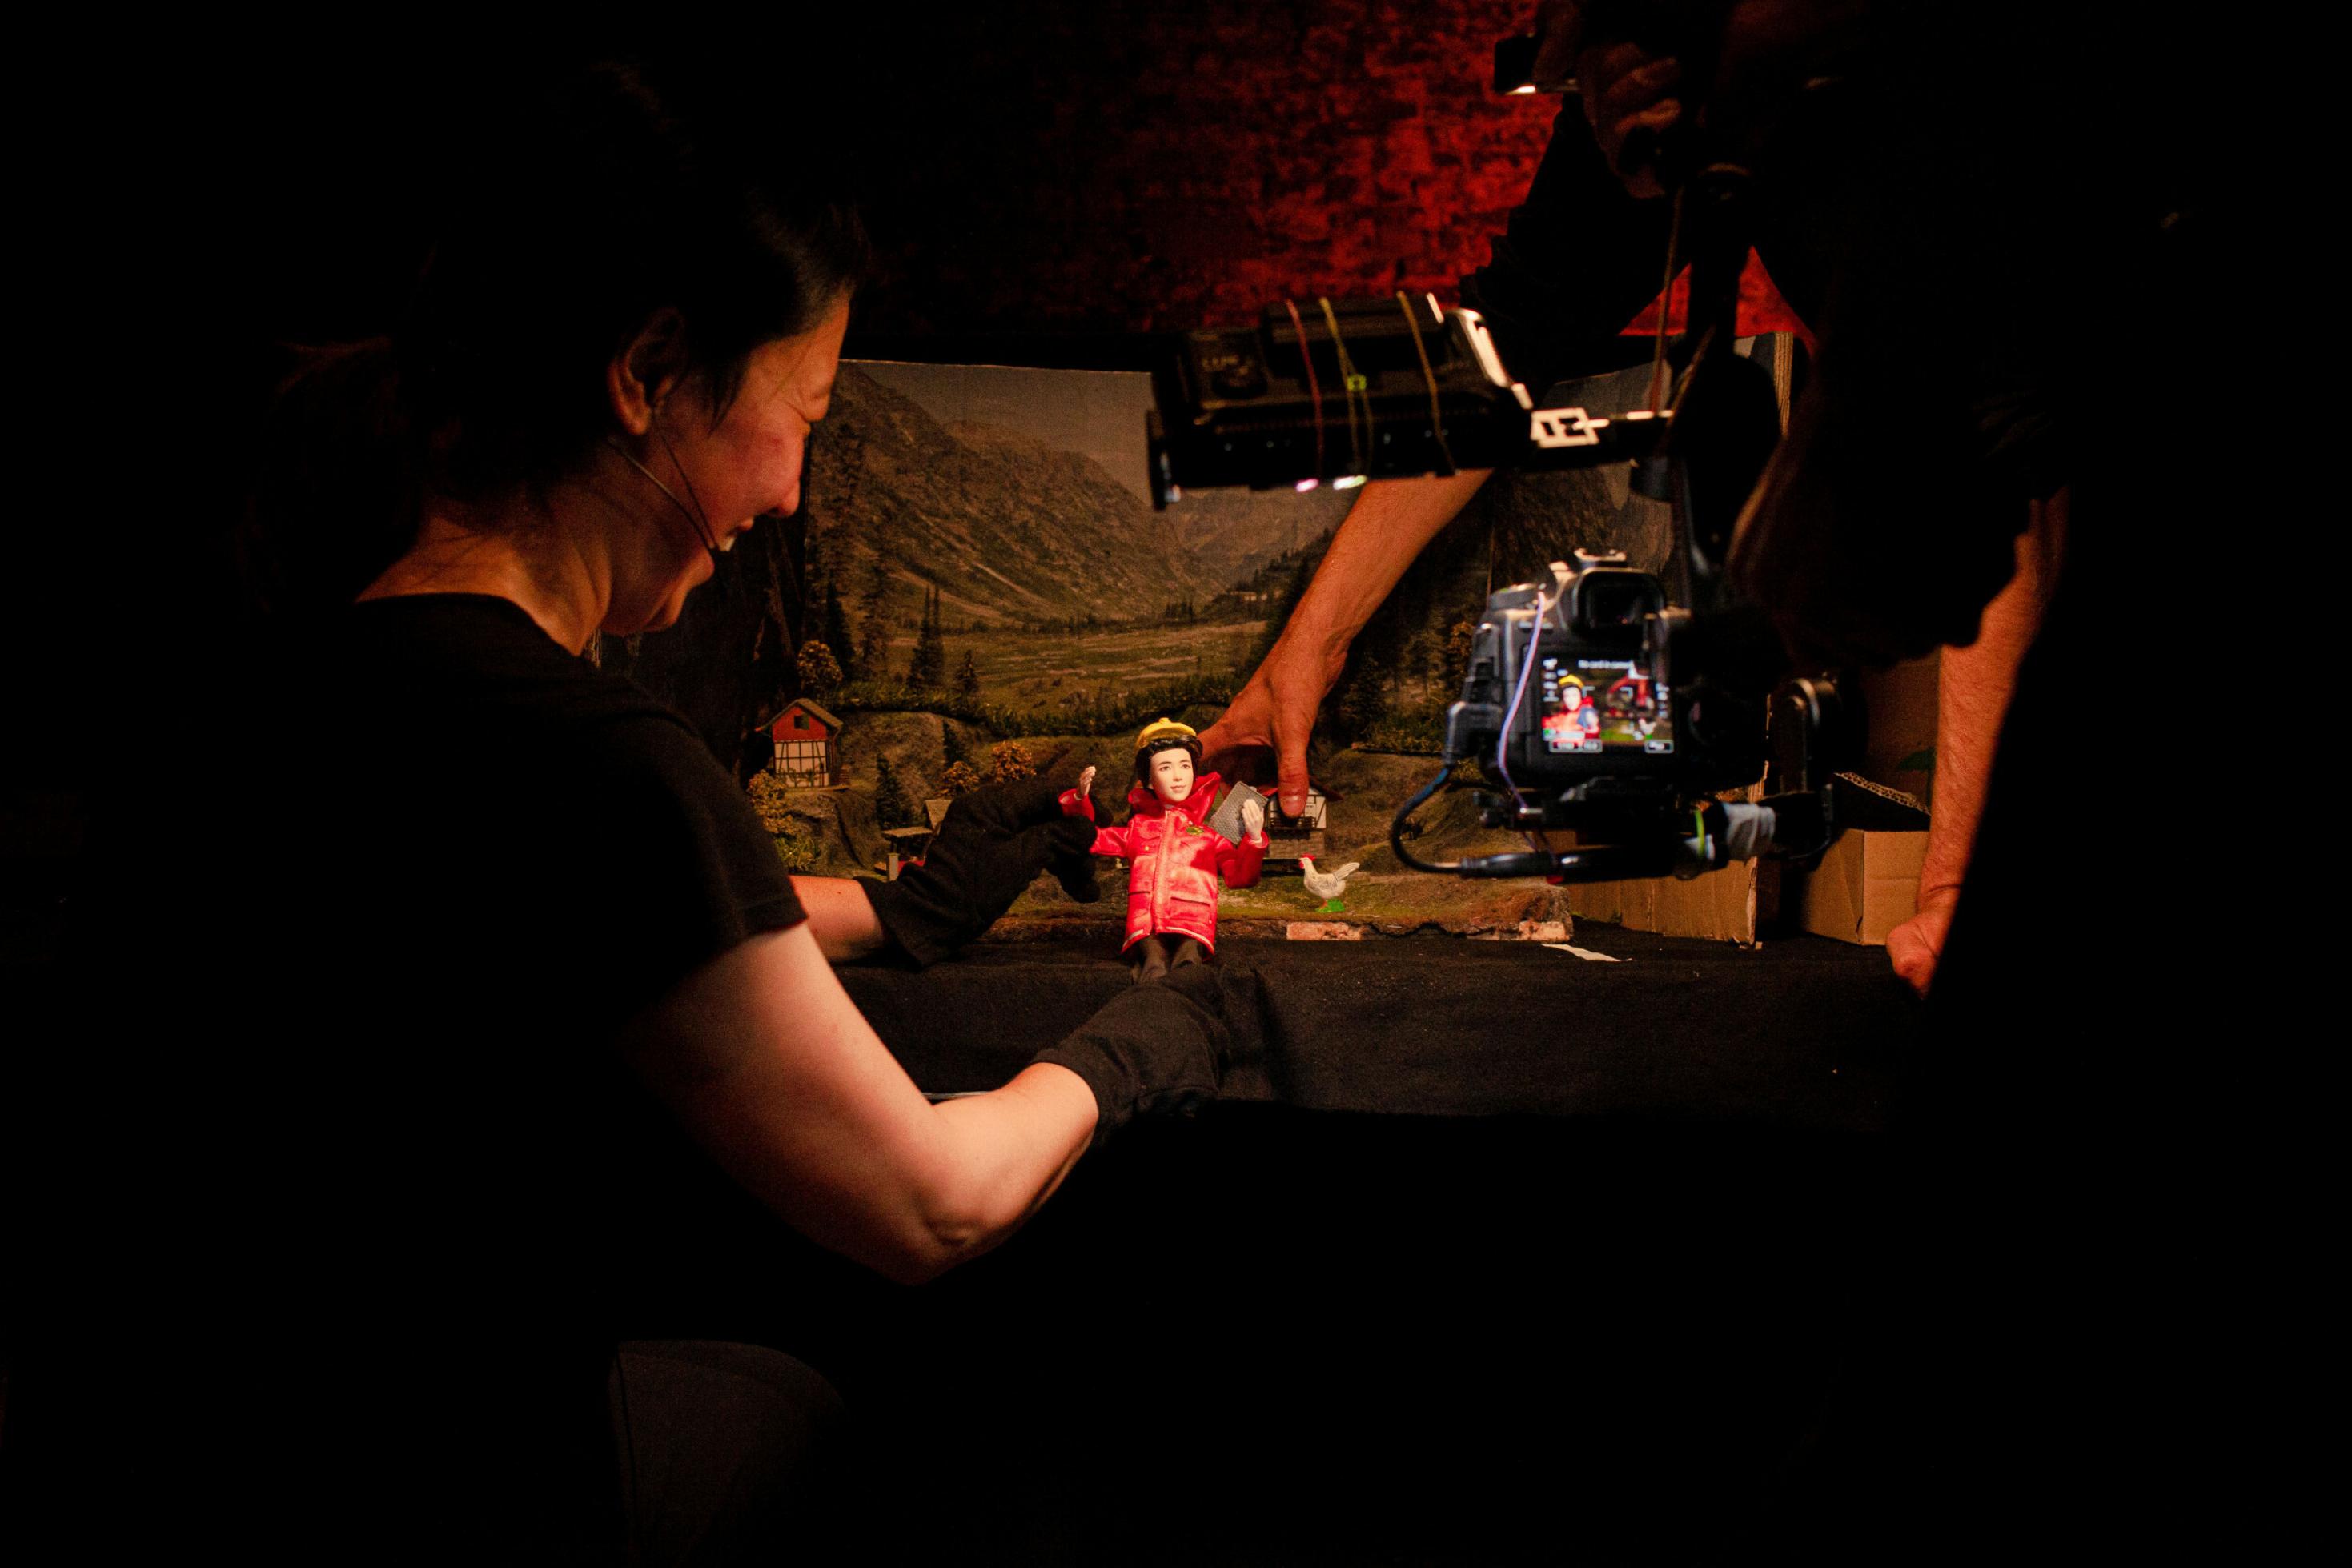 Eine Darstellerin bewegt eine Puppe durch eine Modell-Landschaft, ein Darsteller filmt die Szene.